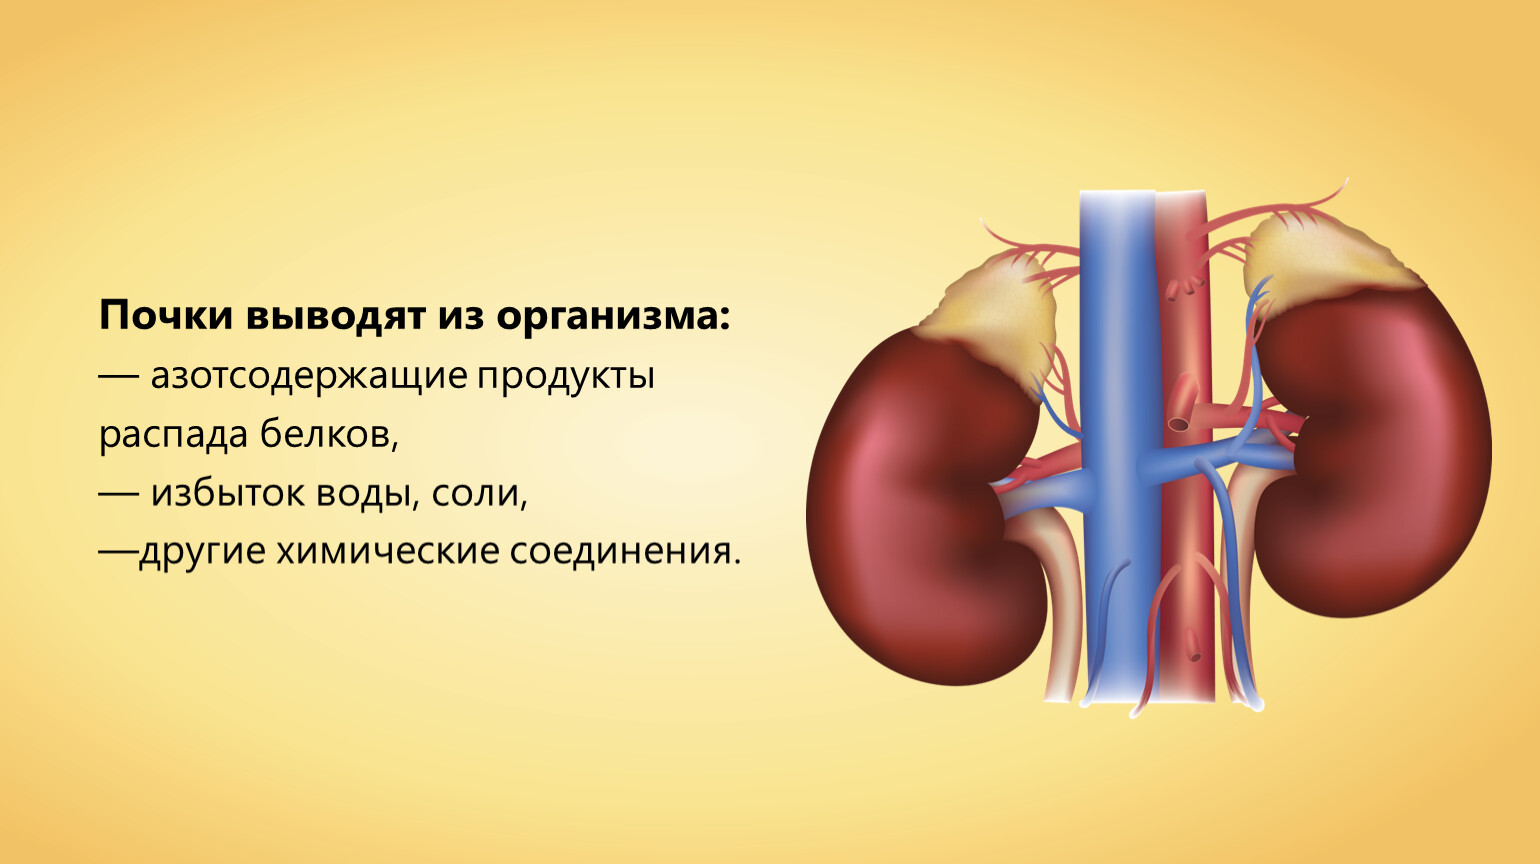 Профилактика заболеваний органов мочевыделительной системы. Заболевания органов мочевыделительной системы.